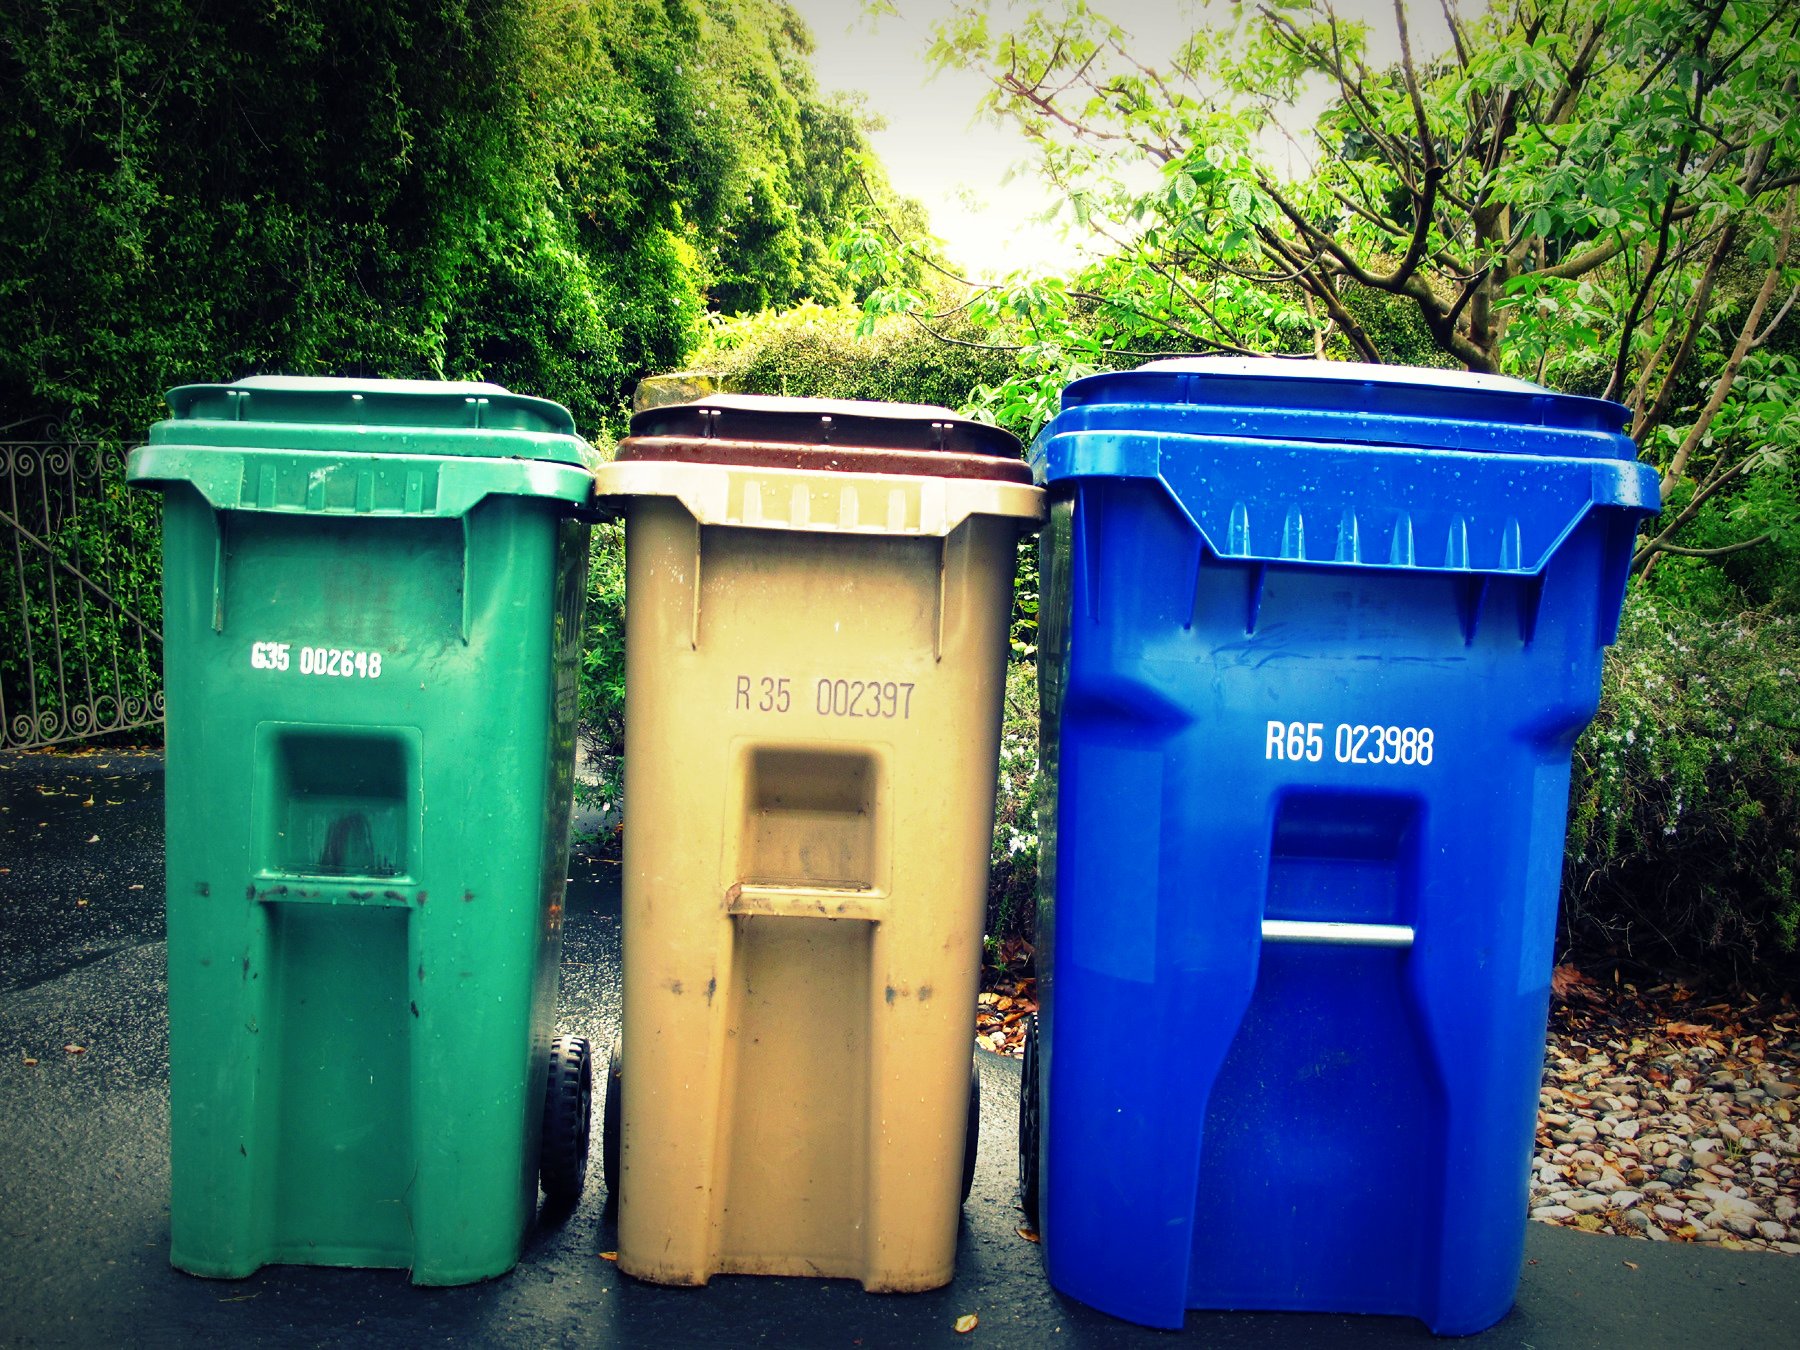 a series of three trash bins sitting side by side